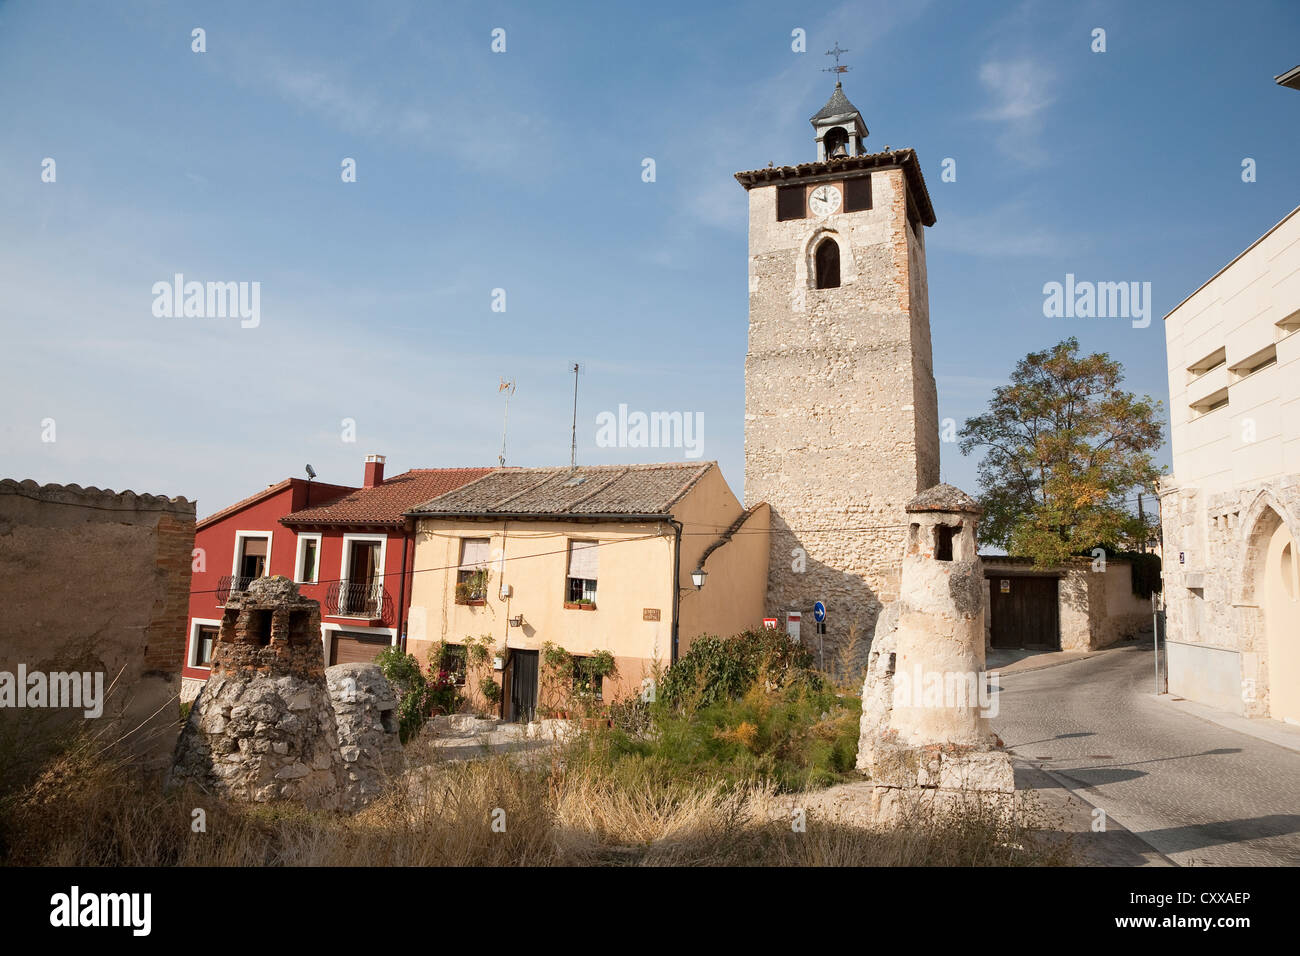 Torre del Reloj en Peñafiel con la típica bodega chimeneas - Peñafiel,  Valladolid, Castilla y León, España Fotografía de stock - Alamy